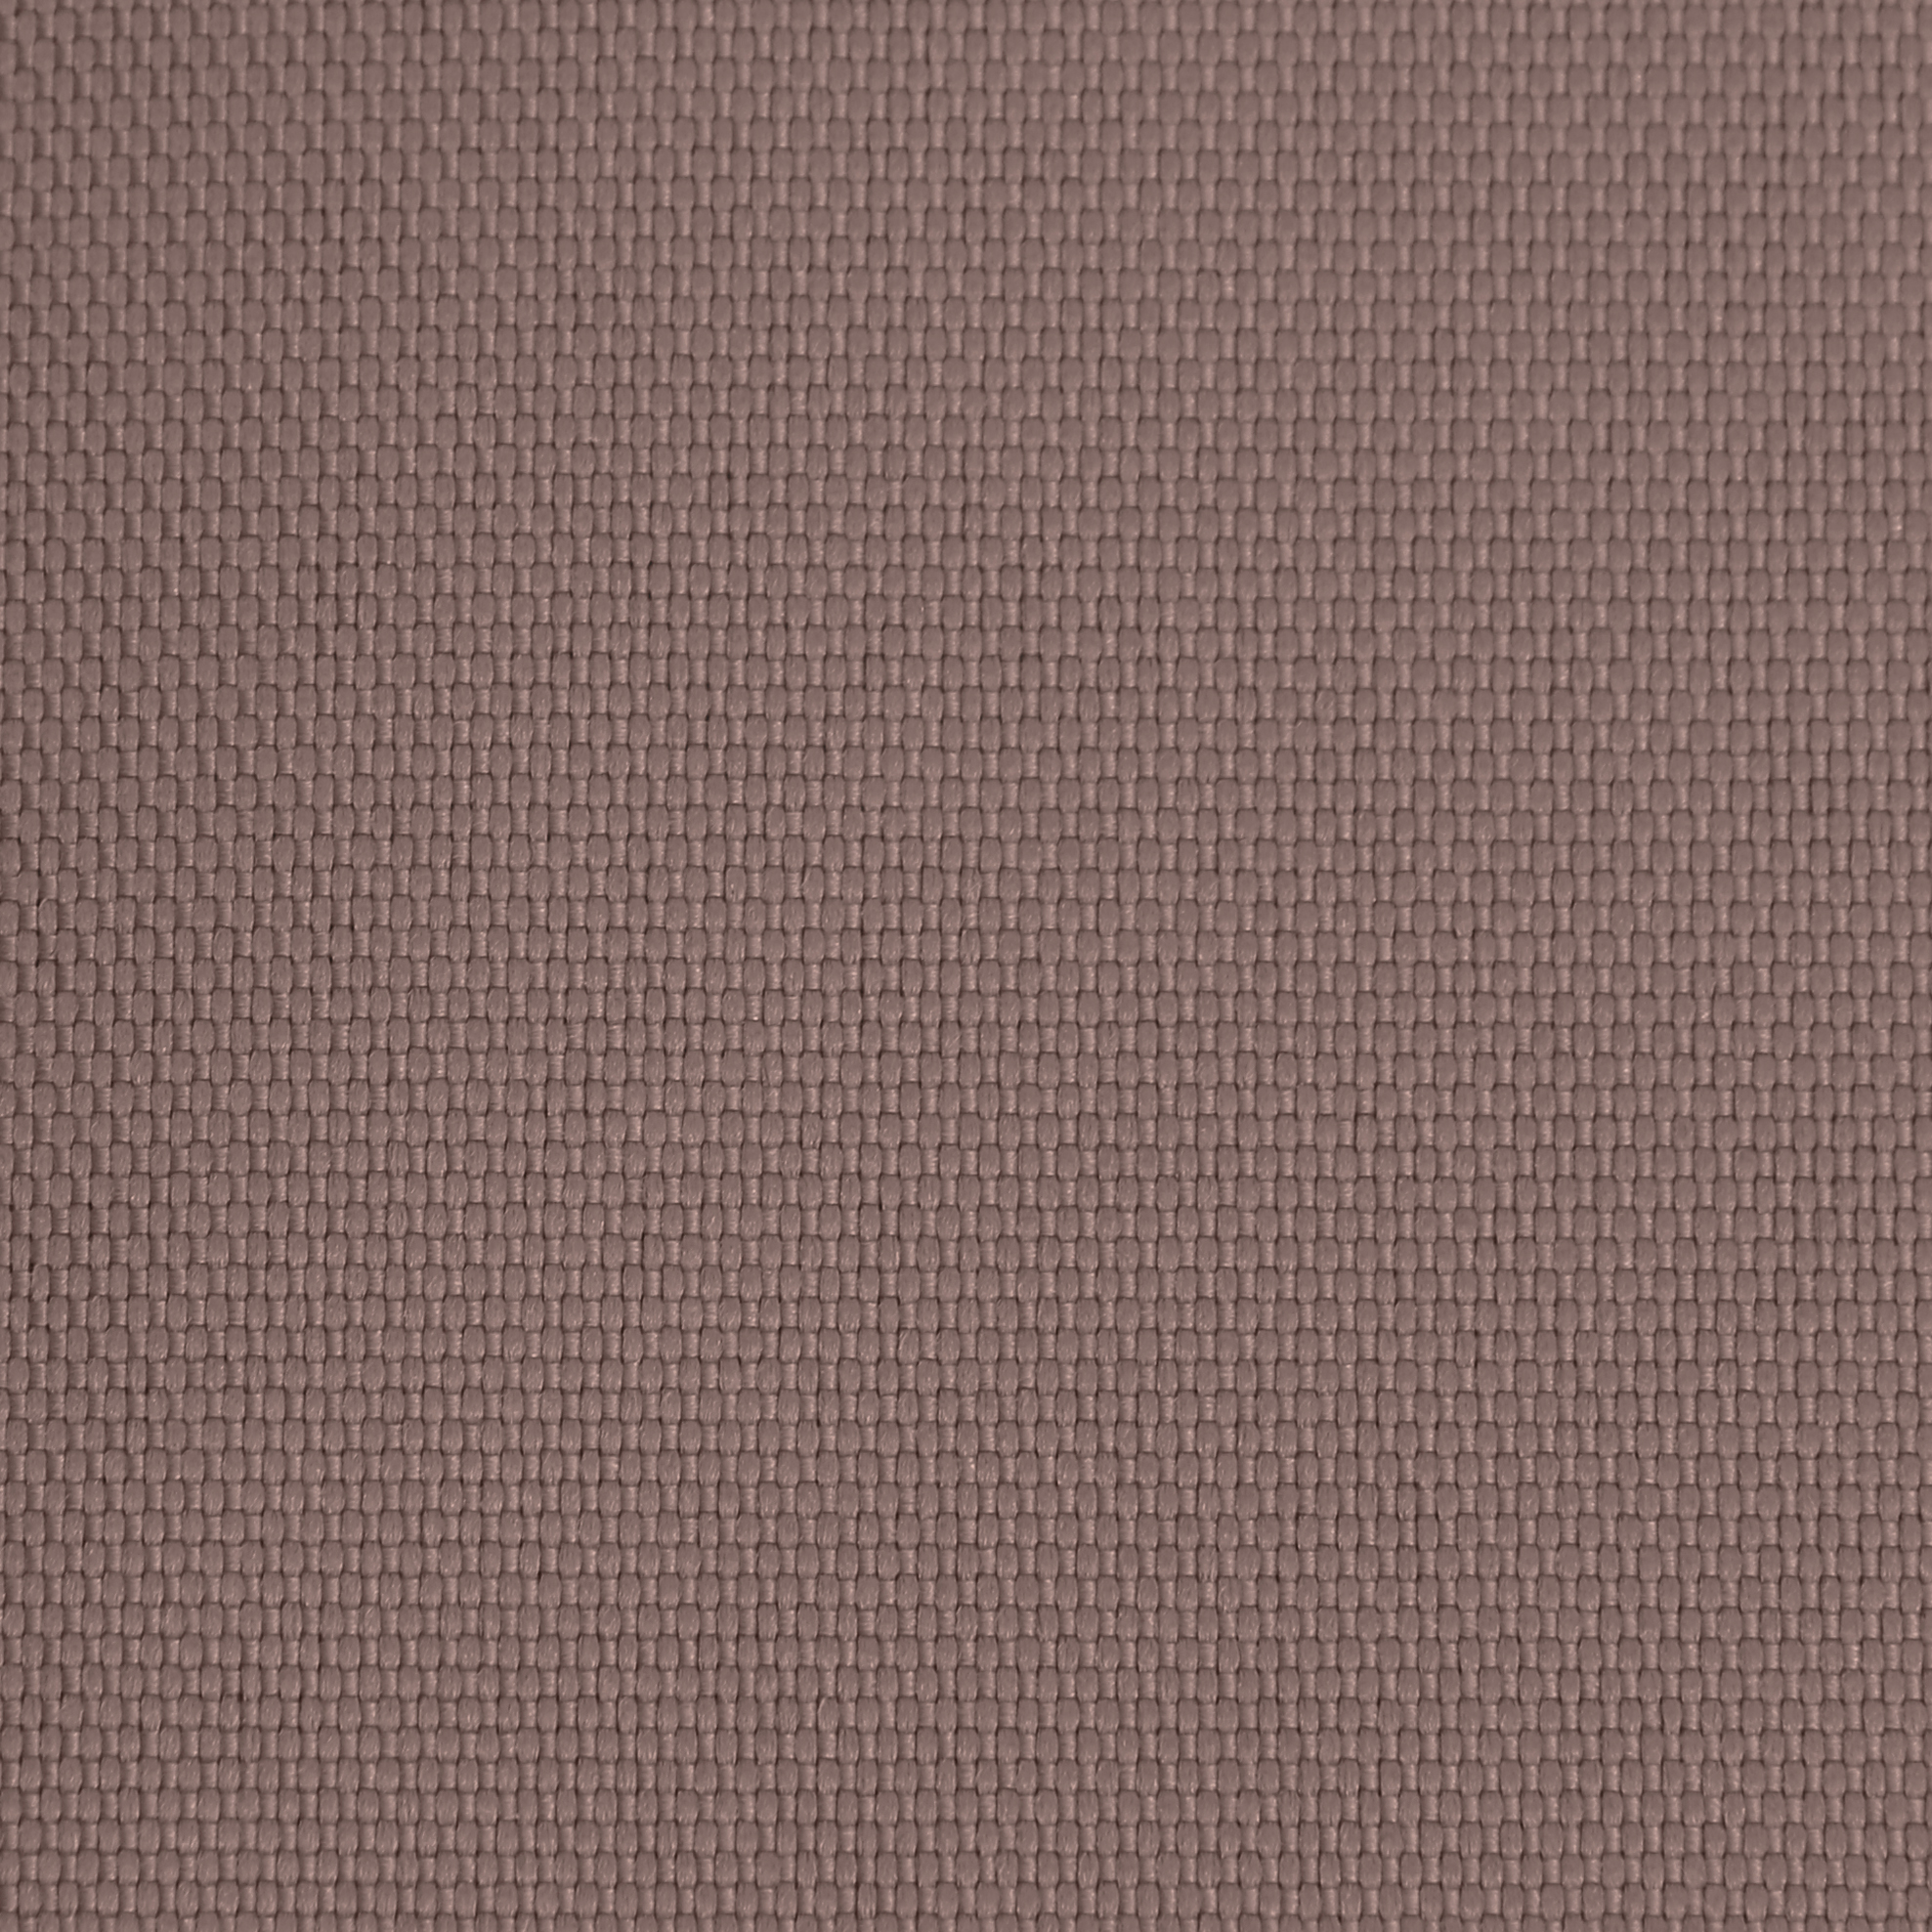 Ткань Оксфорд 600D размер 1м*1,5м арт. 600100670 цвет коричневый